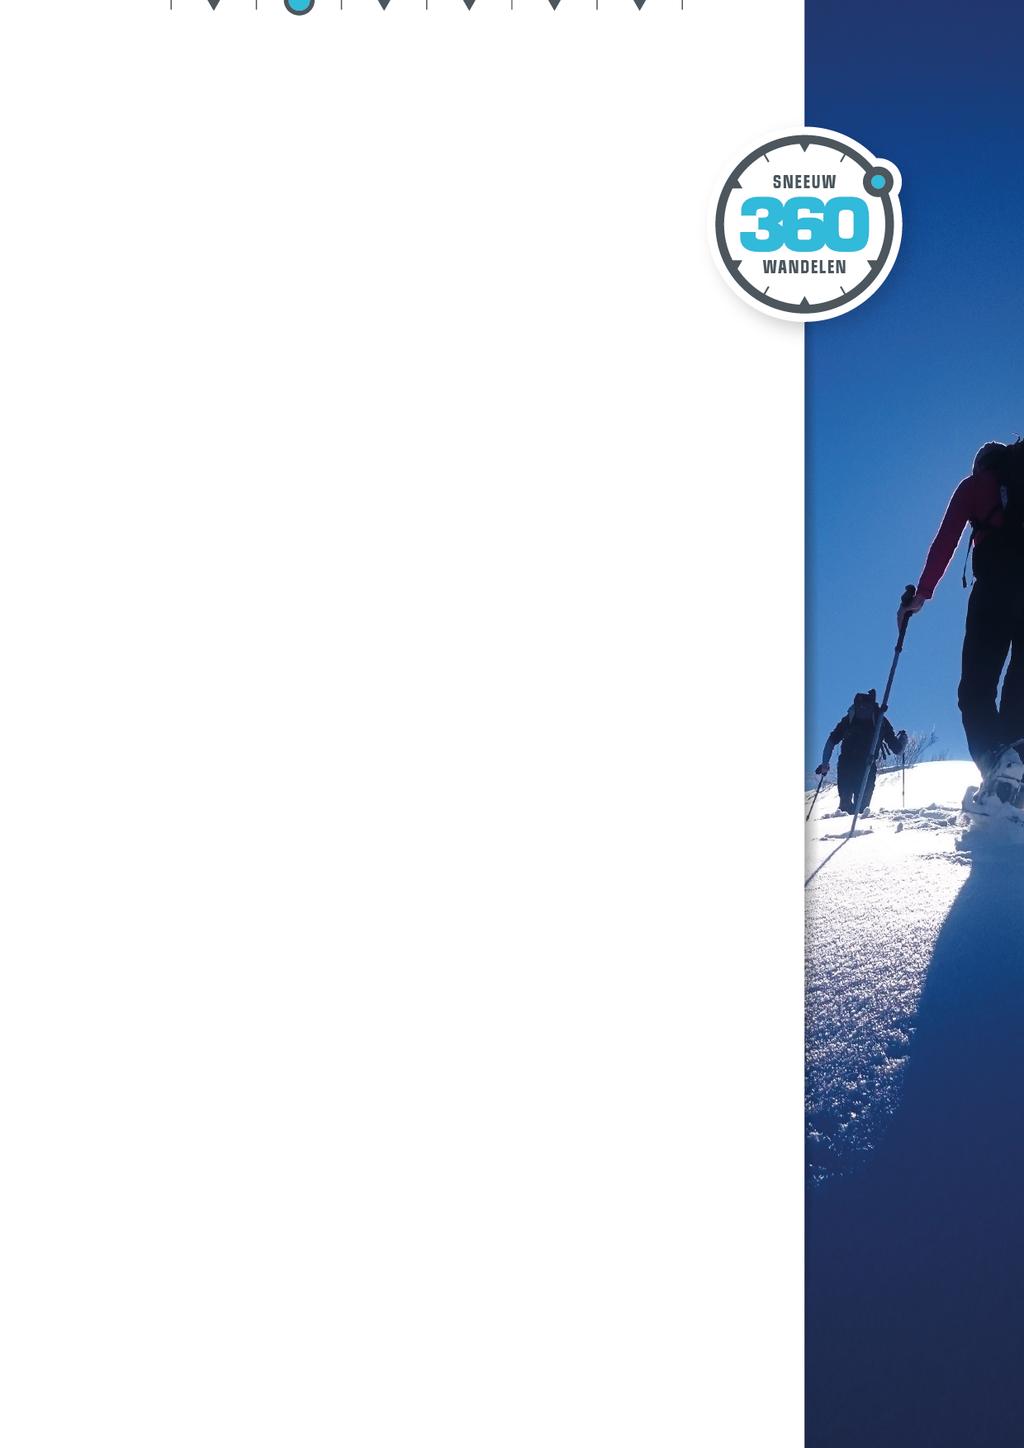 Pagina 1 van 6: Sneeuwschoen trekking rondom de hoogste berg van Zweden Zweeds Lapland Sneeuwwandel trektocht 2018 Met sneeuwschoenen over de mooiste routes langs het Koningspad Hoog boven de